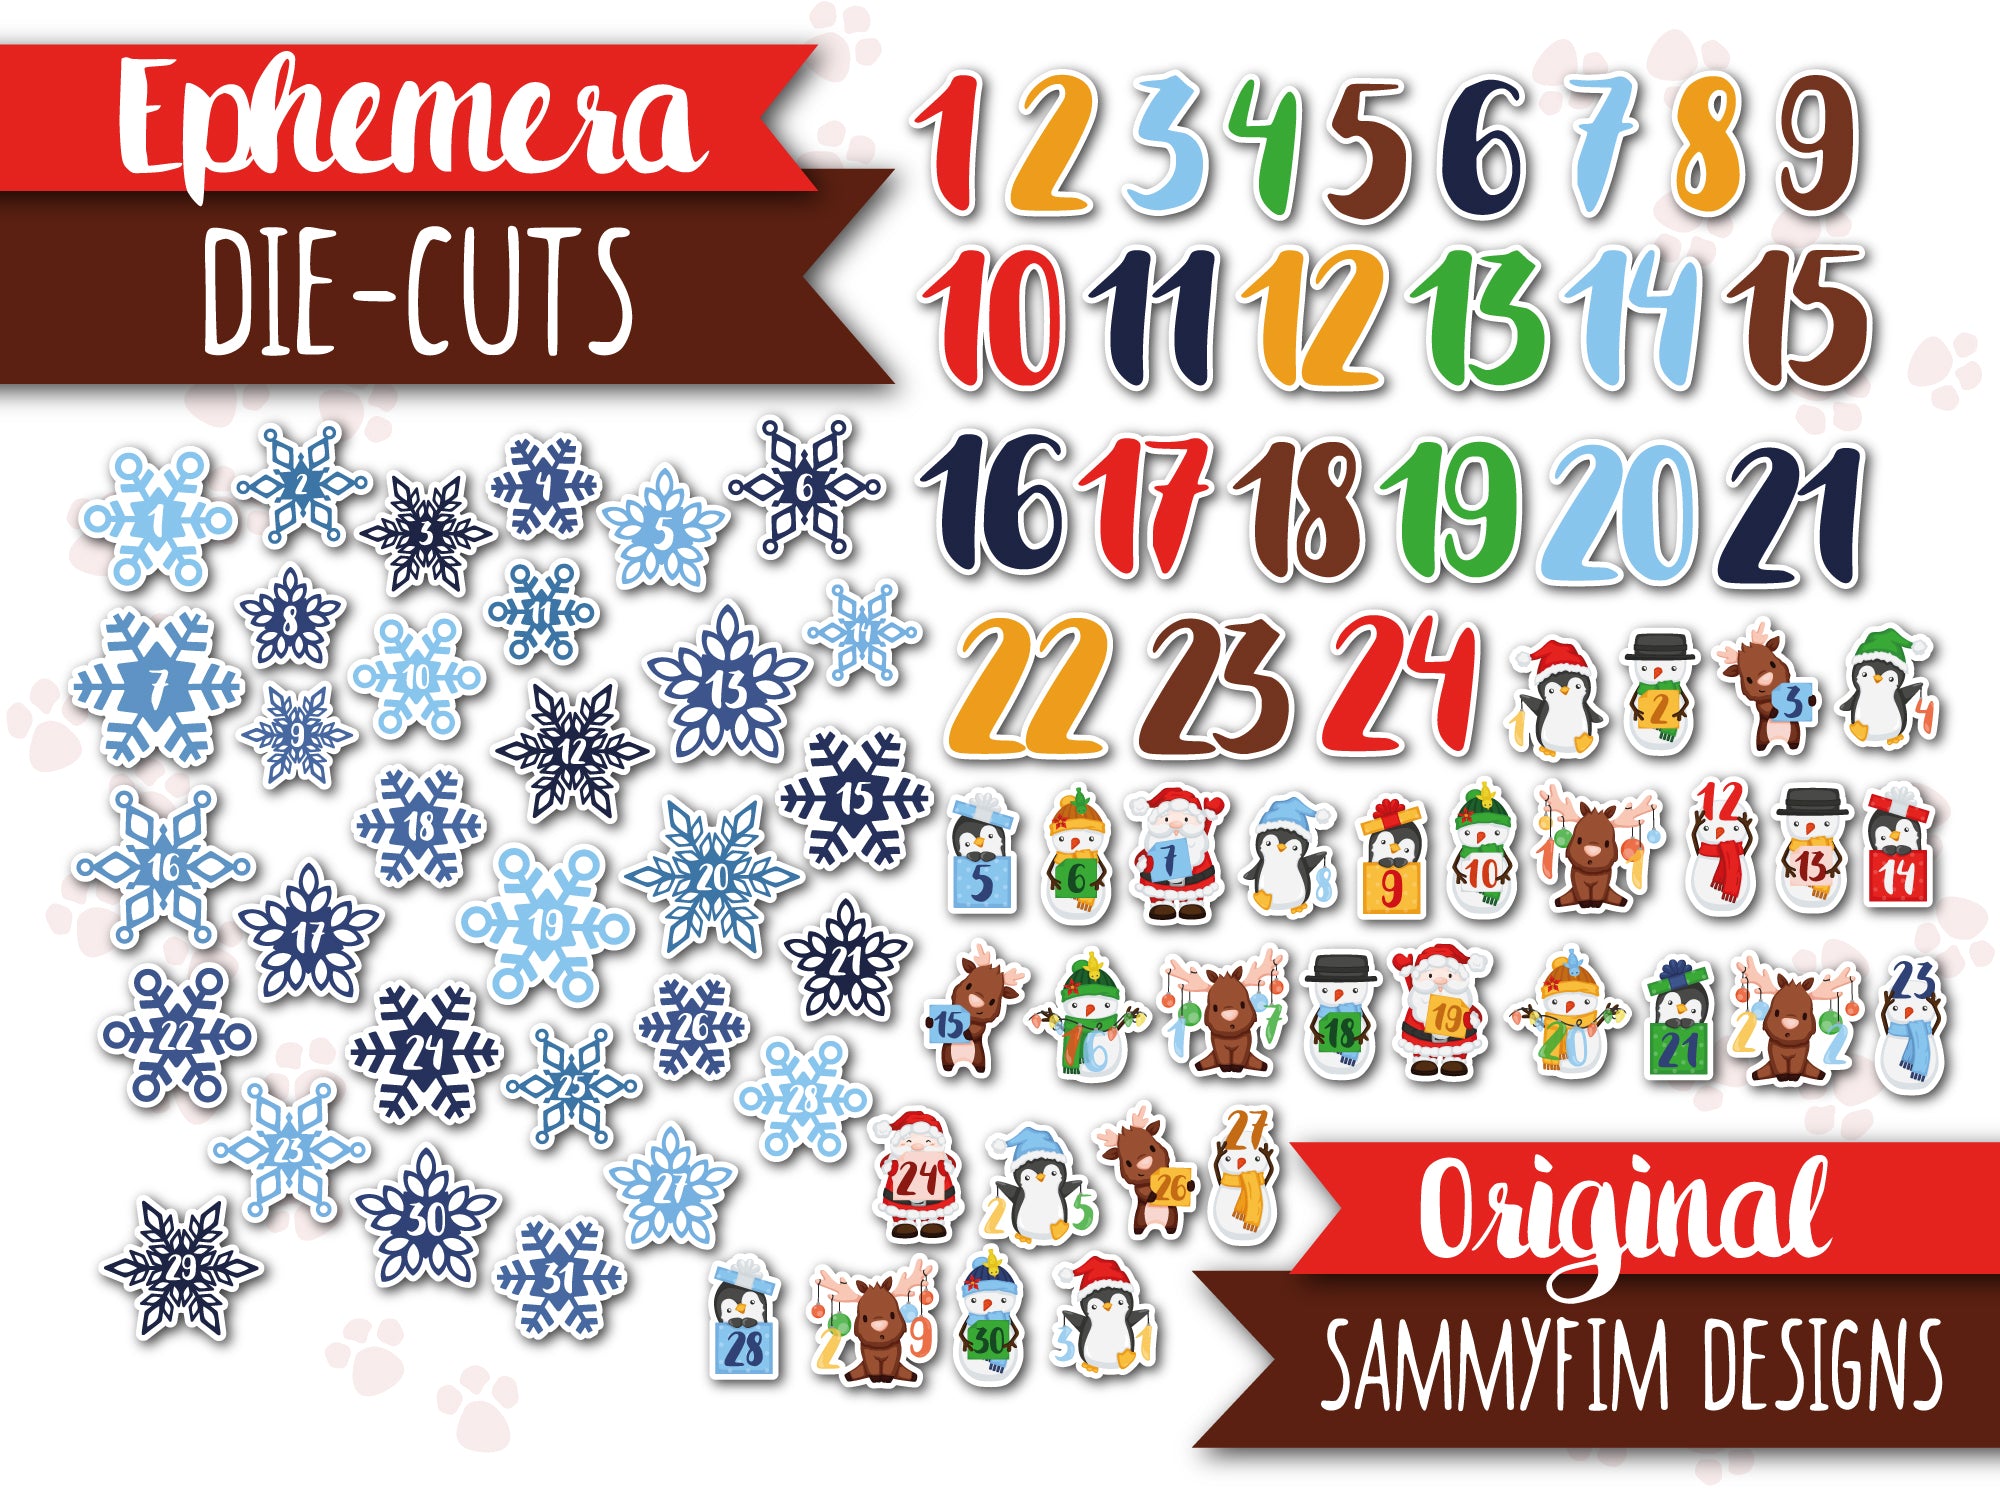 [NEU!] Ephemera Pack (Die-Cuts) ♥ Weihnachts-Trubel ♥ Zahlen